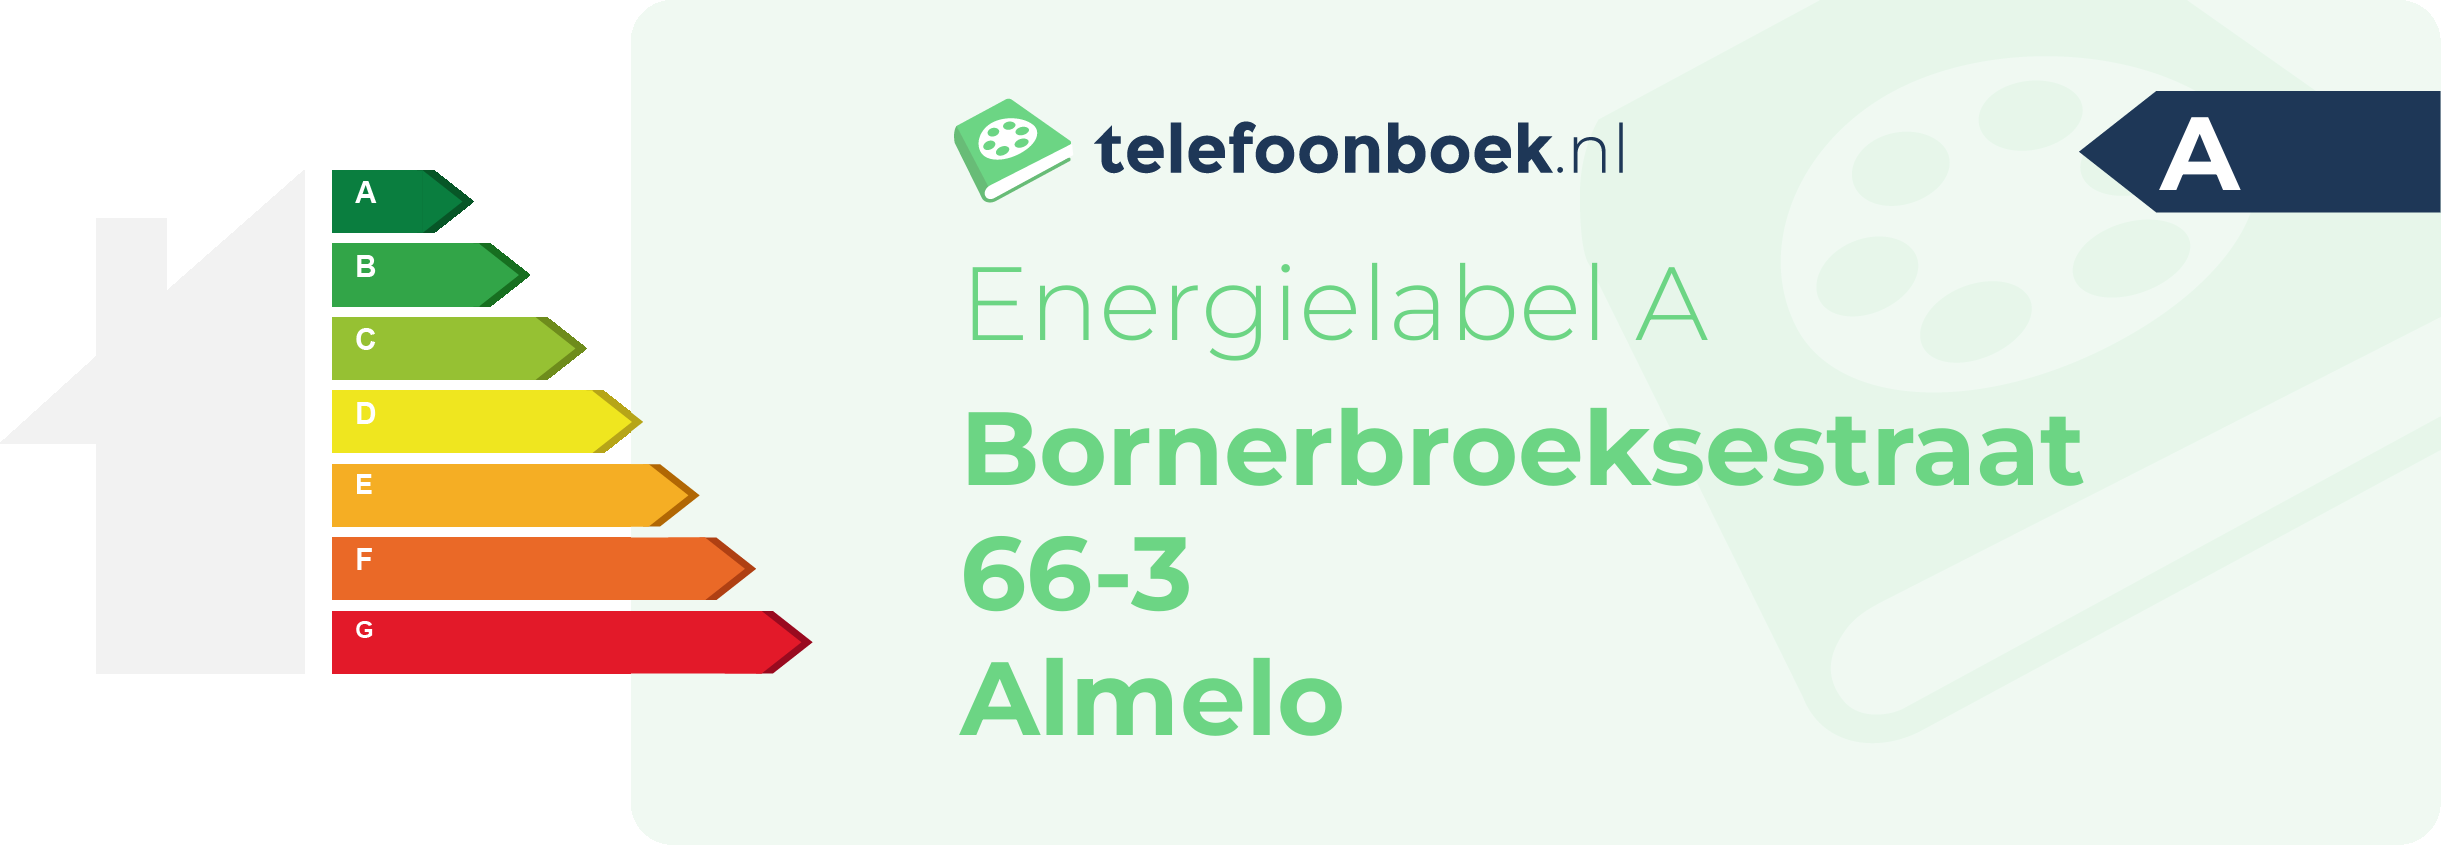 Energielabel Bornerbroeksestraat 66-3 Almelo